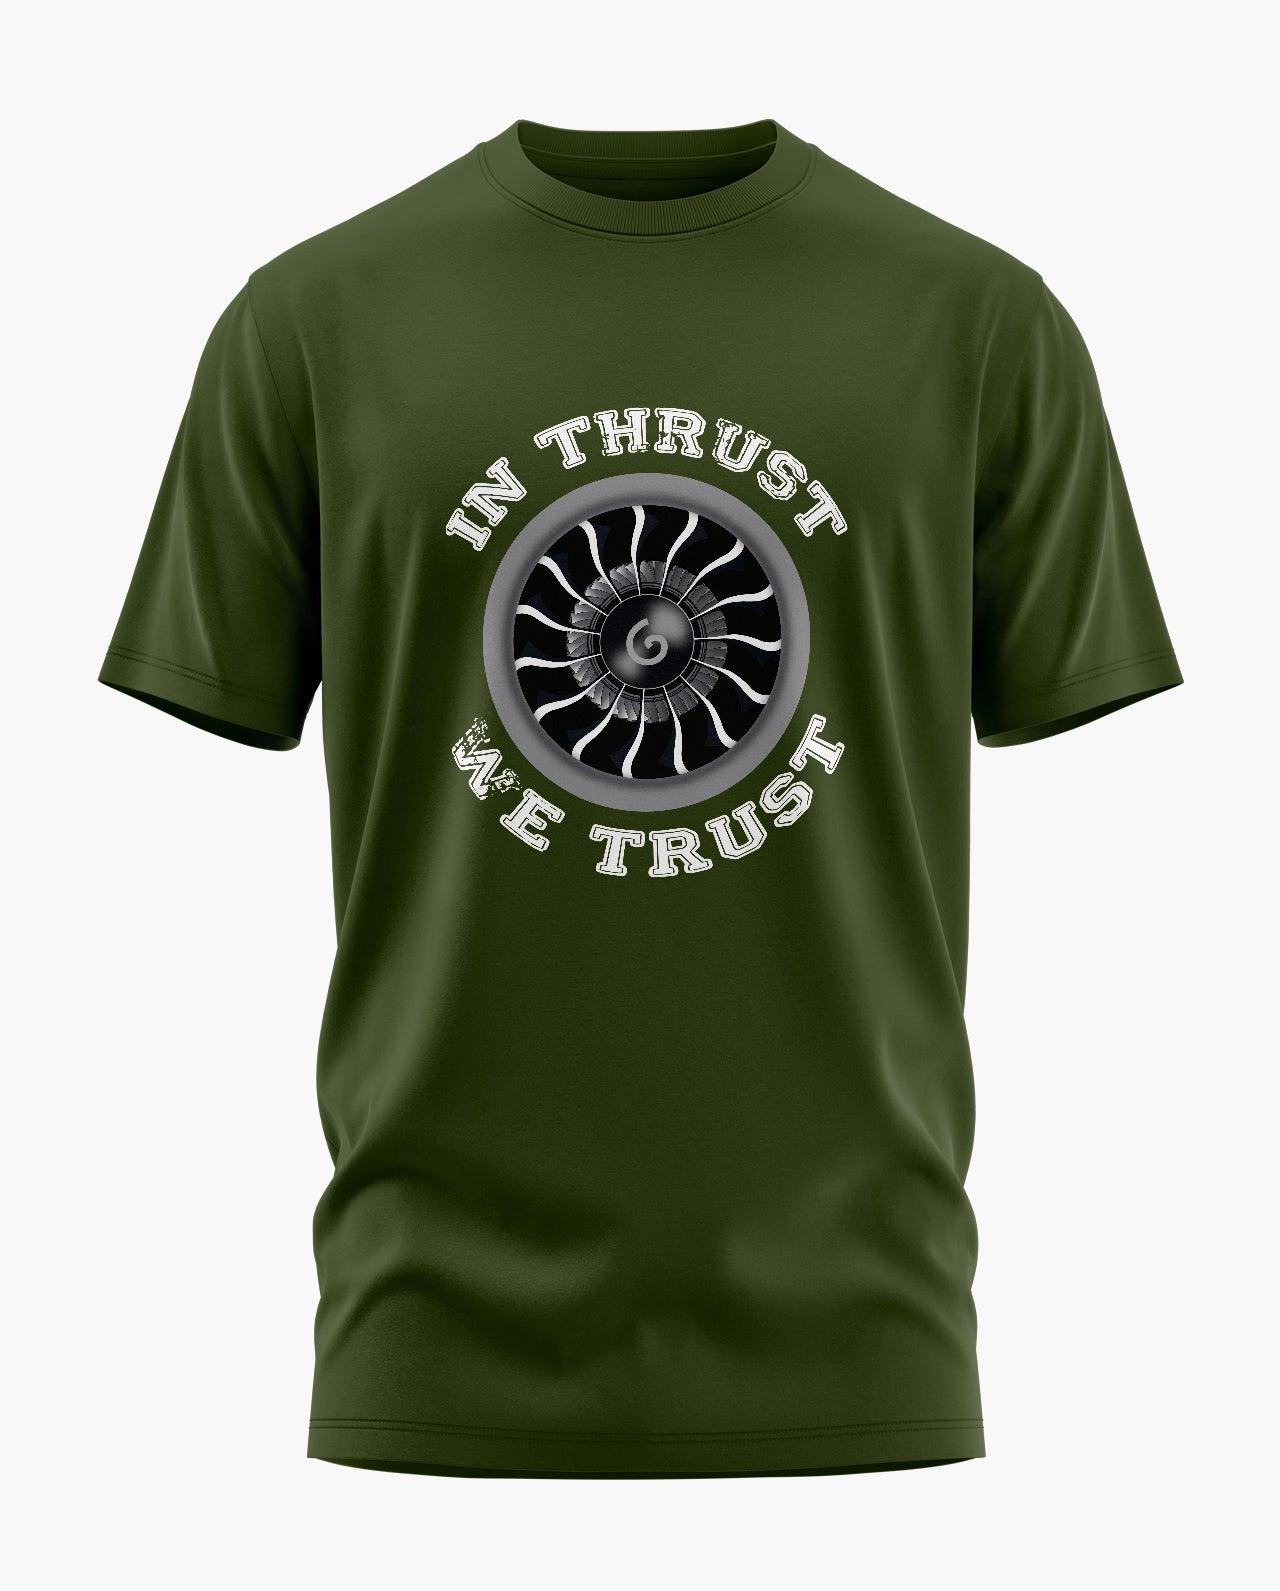 In Thrust We Trust Pilot T-Shirt - Aero Armour